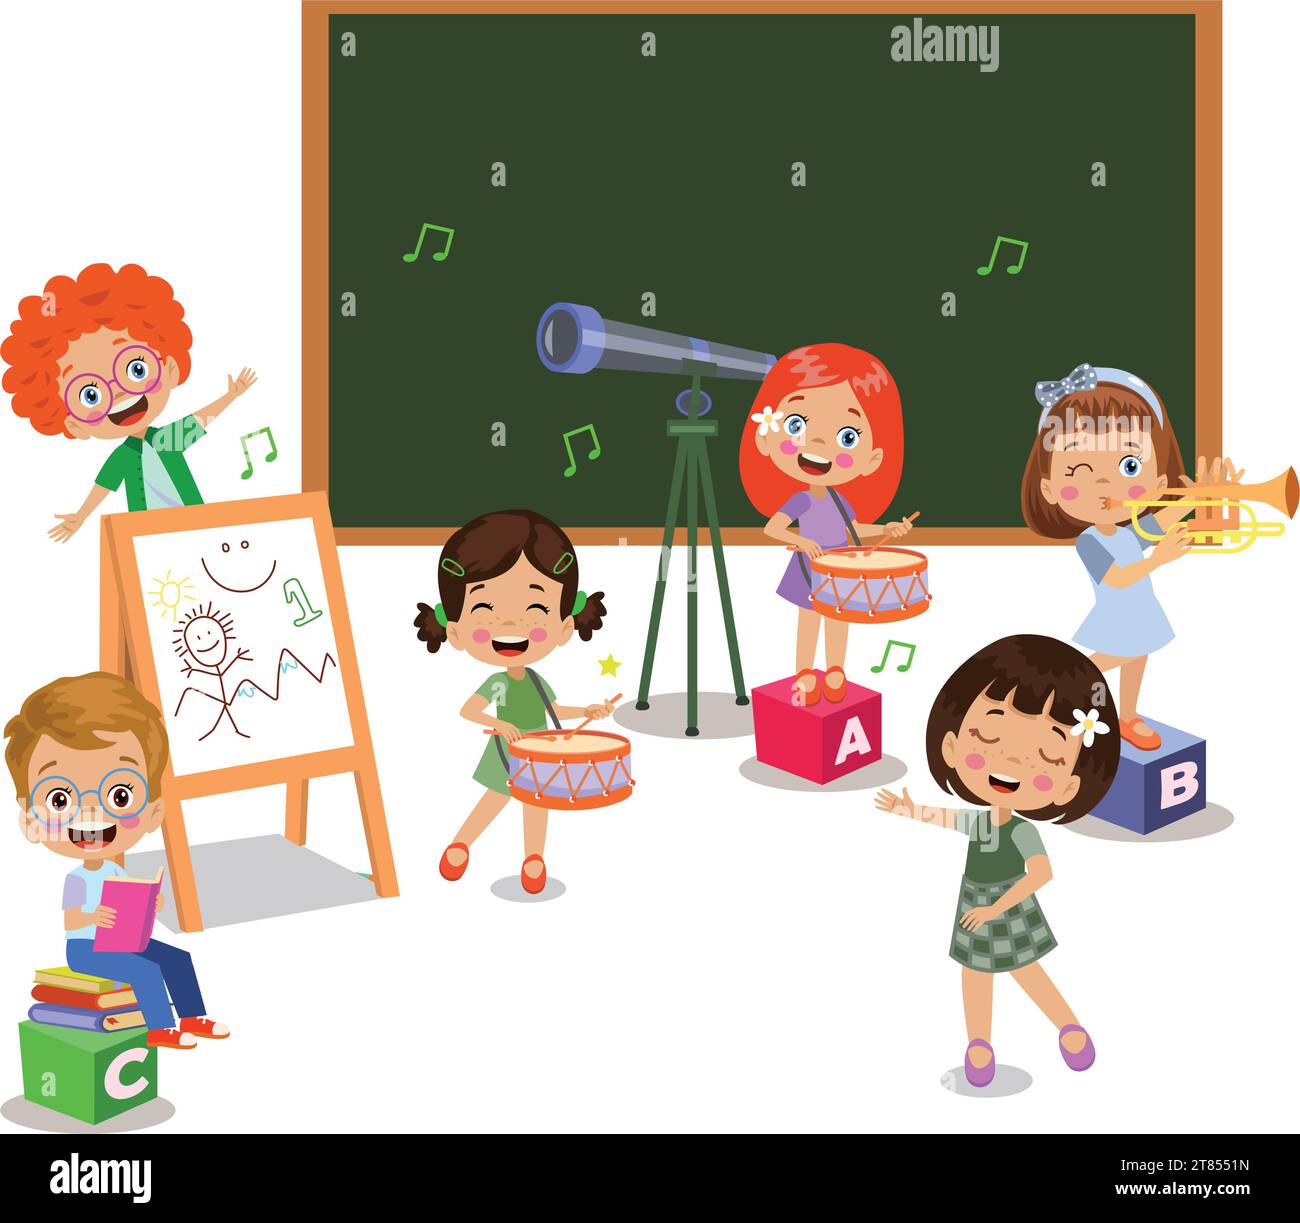 bambini felici che suonano strumenti e cantano in classe Illustrazione Vettoriale